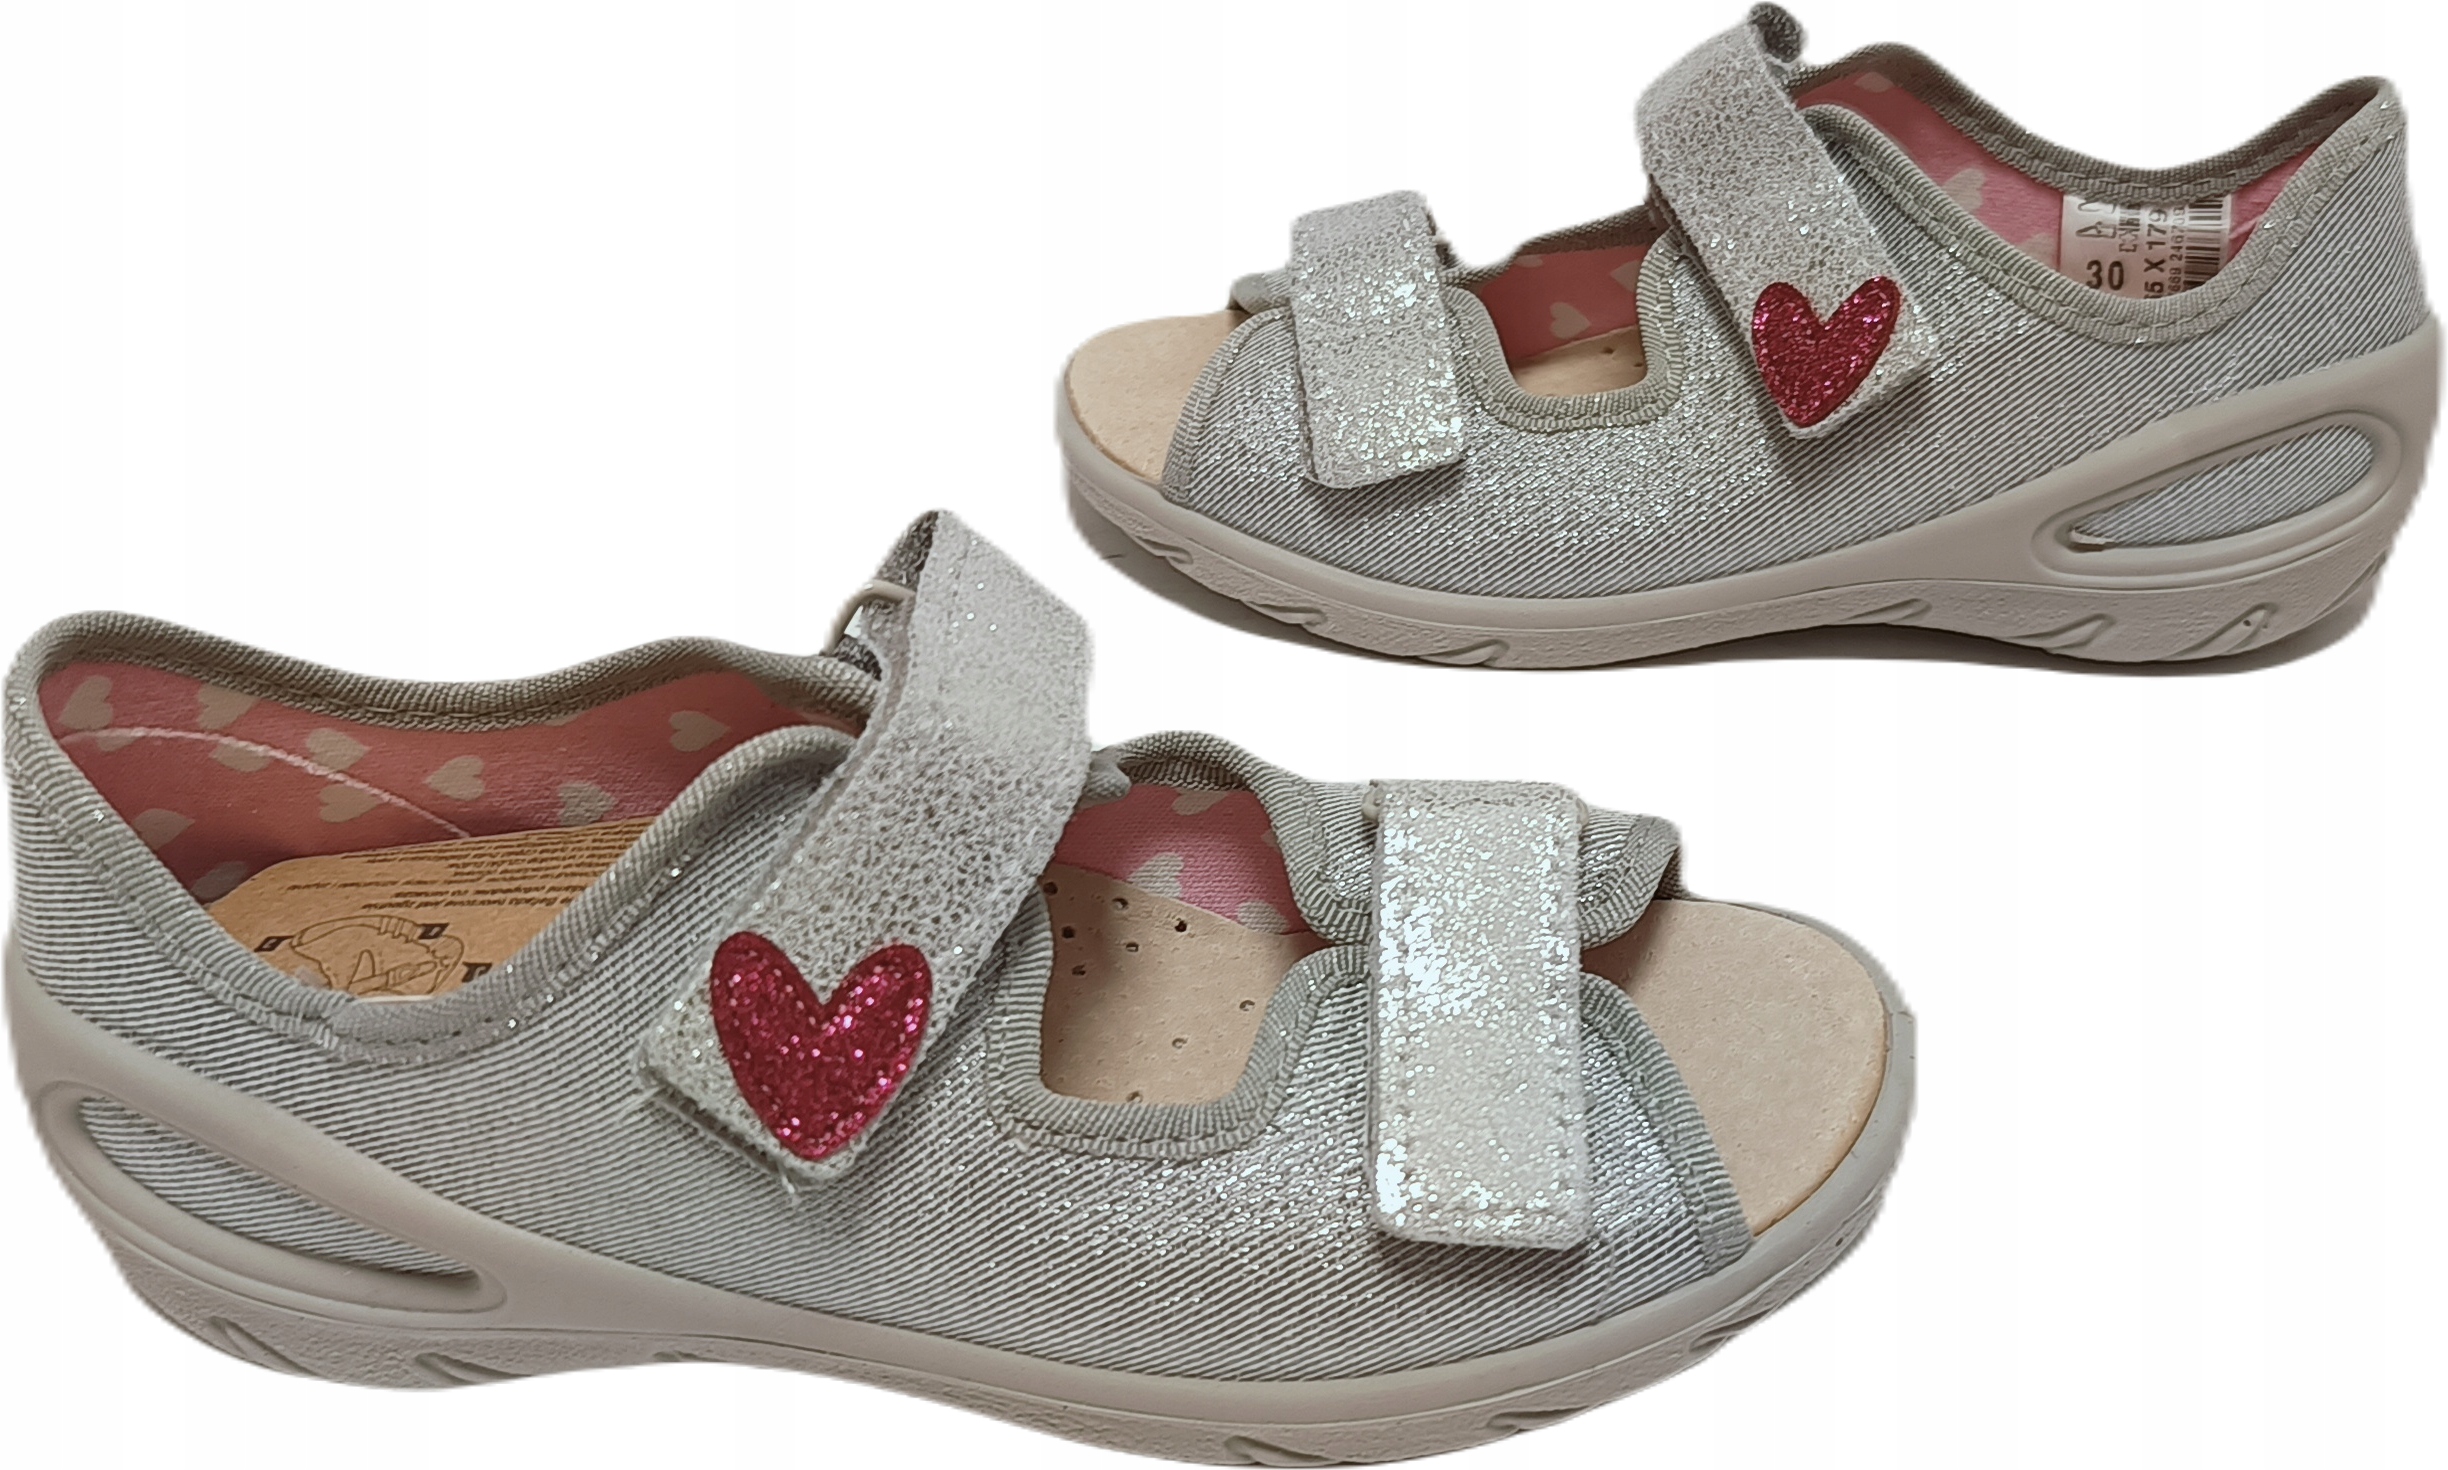 Papuče detské sandále BEFADO 065x179 sivá ružová srdiečko r.27